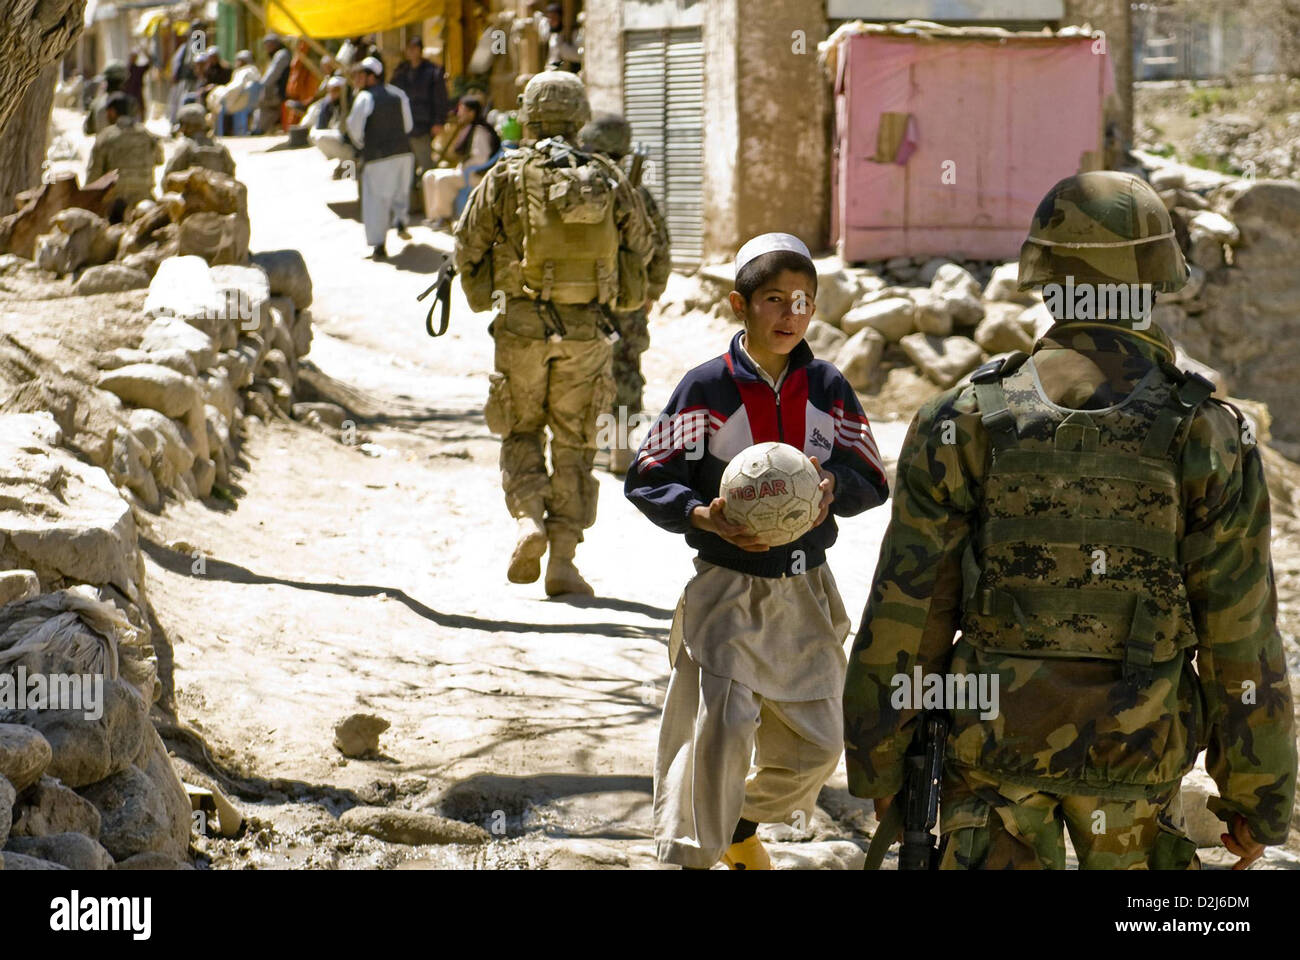 Noi e soldati afgani patrol Nawshad Village Aprile 2, 2012 in provincia di Logar, Afghanistan. I soldati USA ha fornito sicurezza come forze di sicurezza nazionali afgane ha parlato con la gente del posto e ricerca per le armi e materiali illegali durante l'operazione. Foto Stock